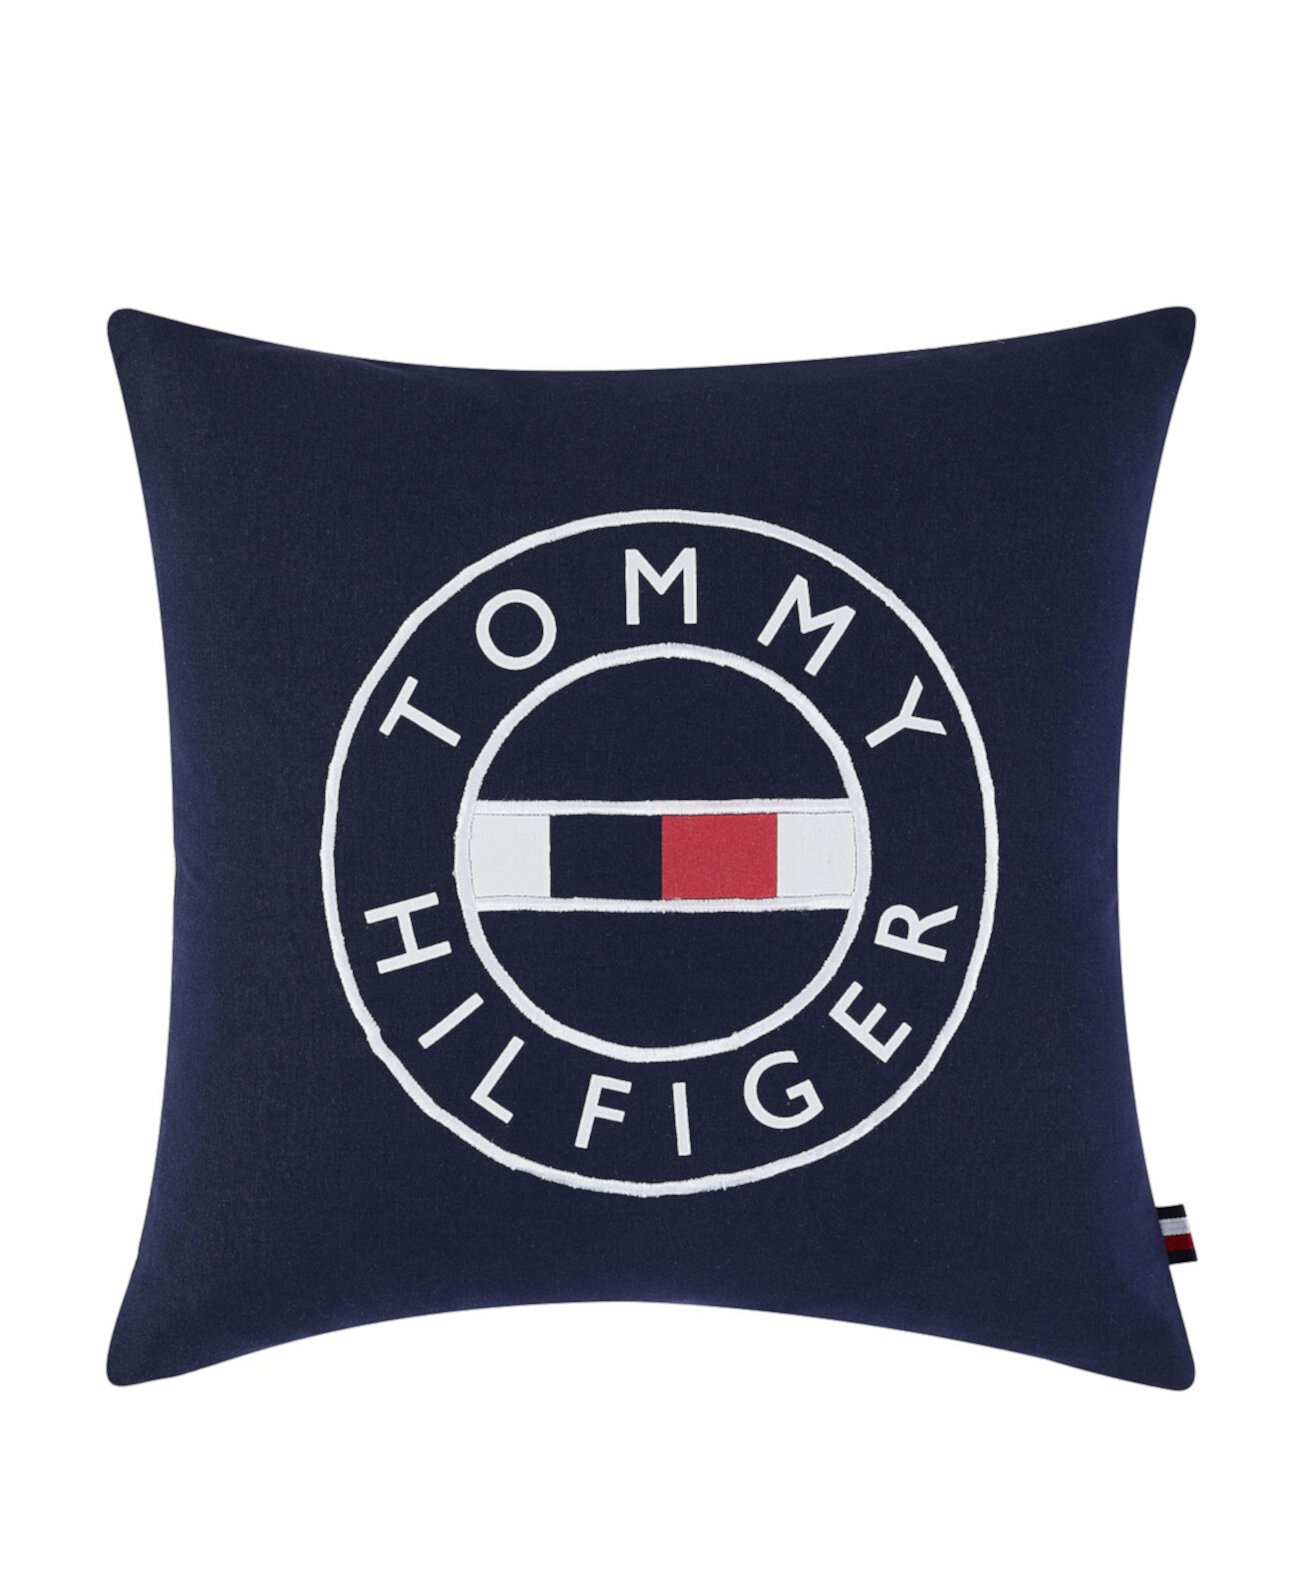 Декоративная подушка с круглым флажком, 18 x 18 дюймов Tommy Hilfiger